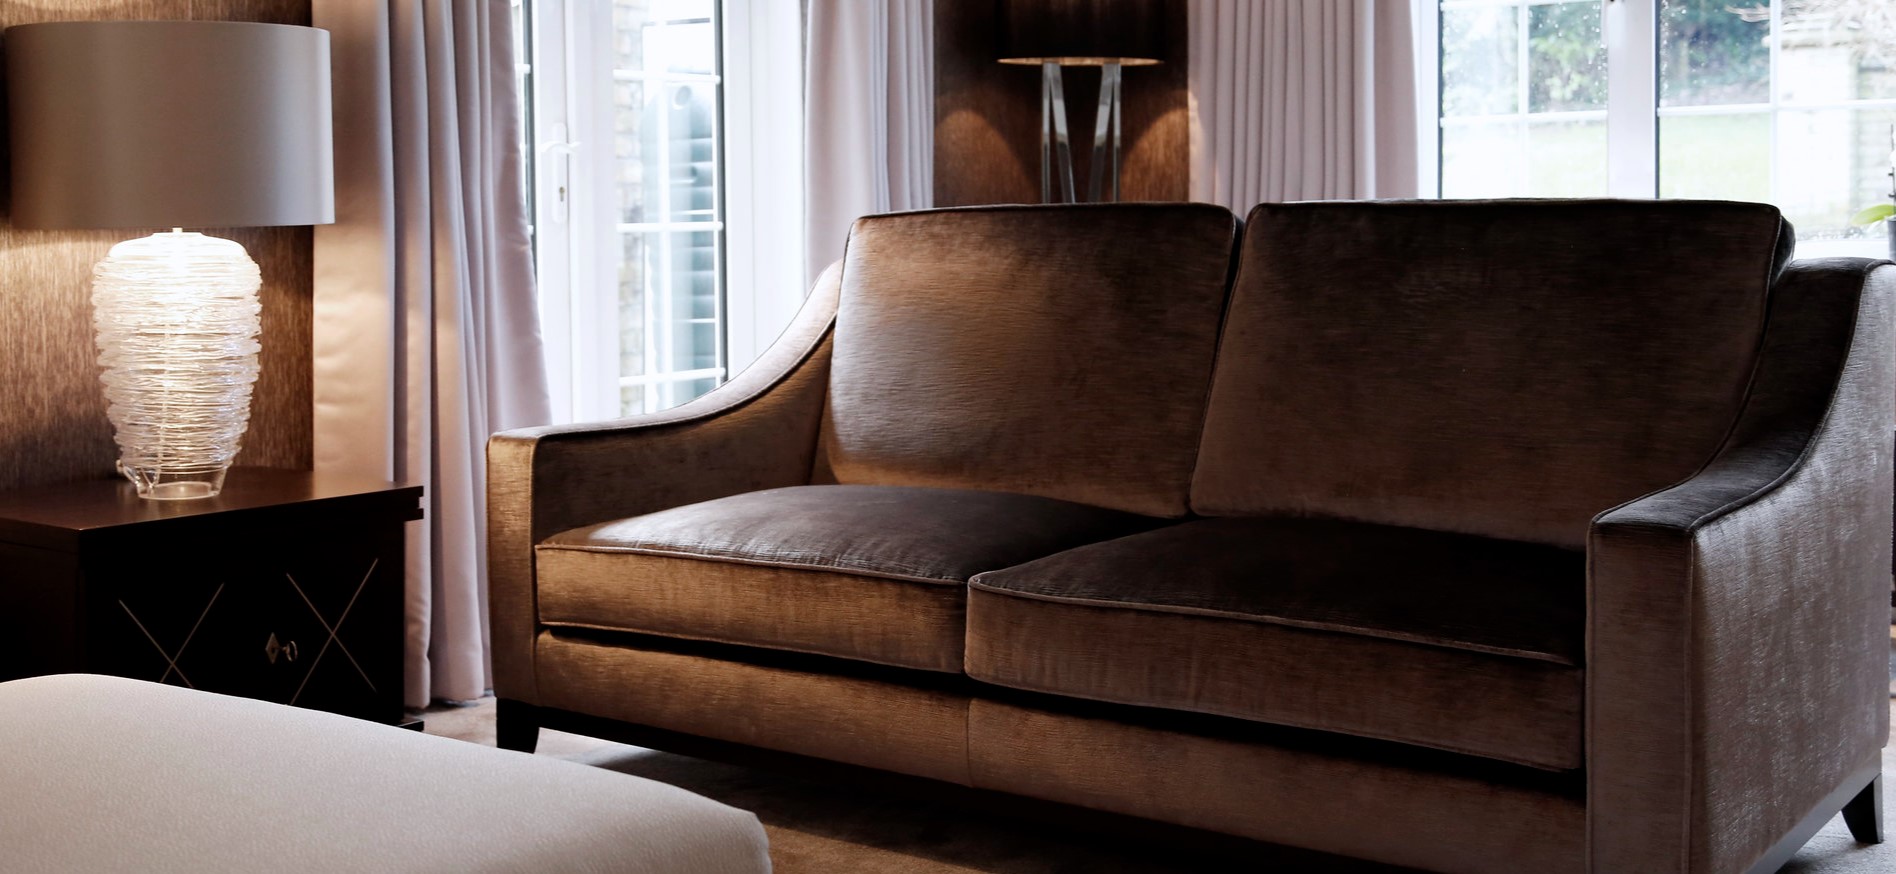 Цвет дивана должен гармонировать с отделкой и мебелью в гостиной